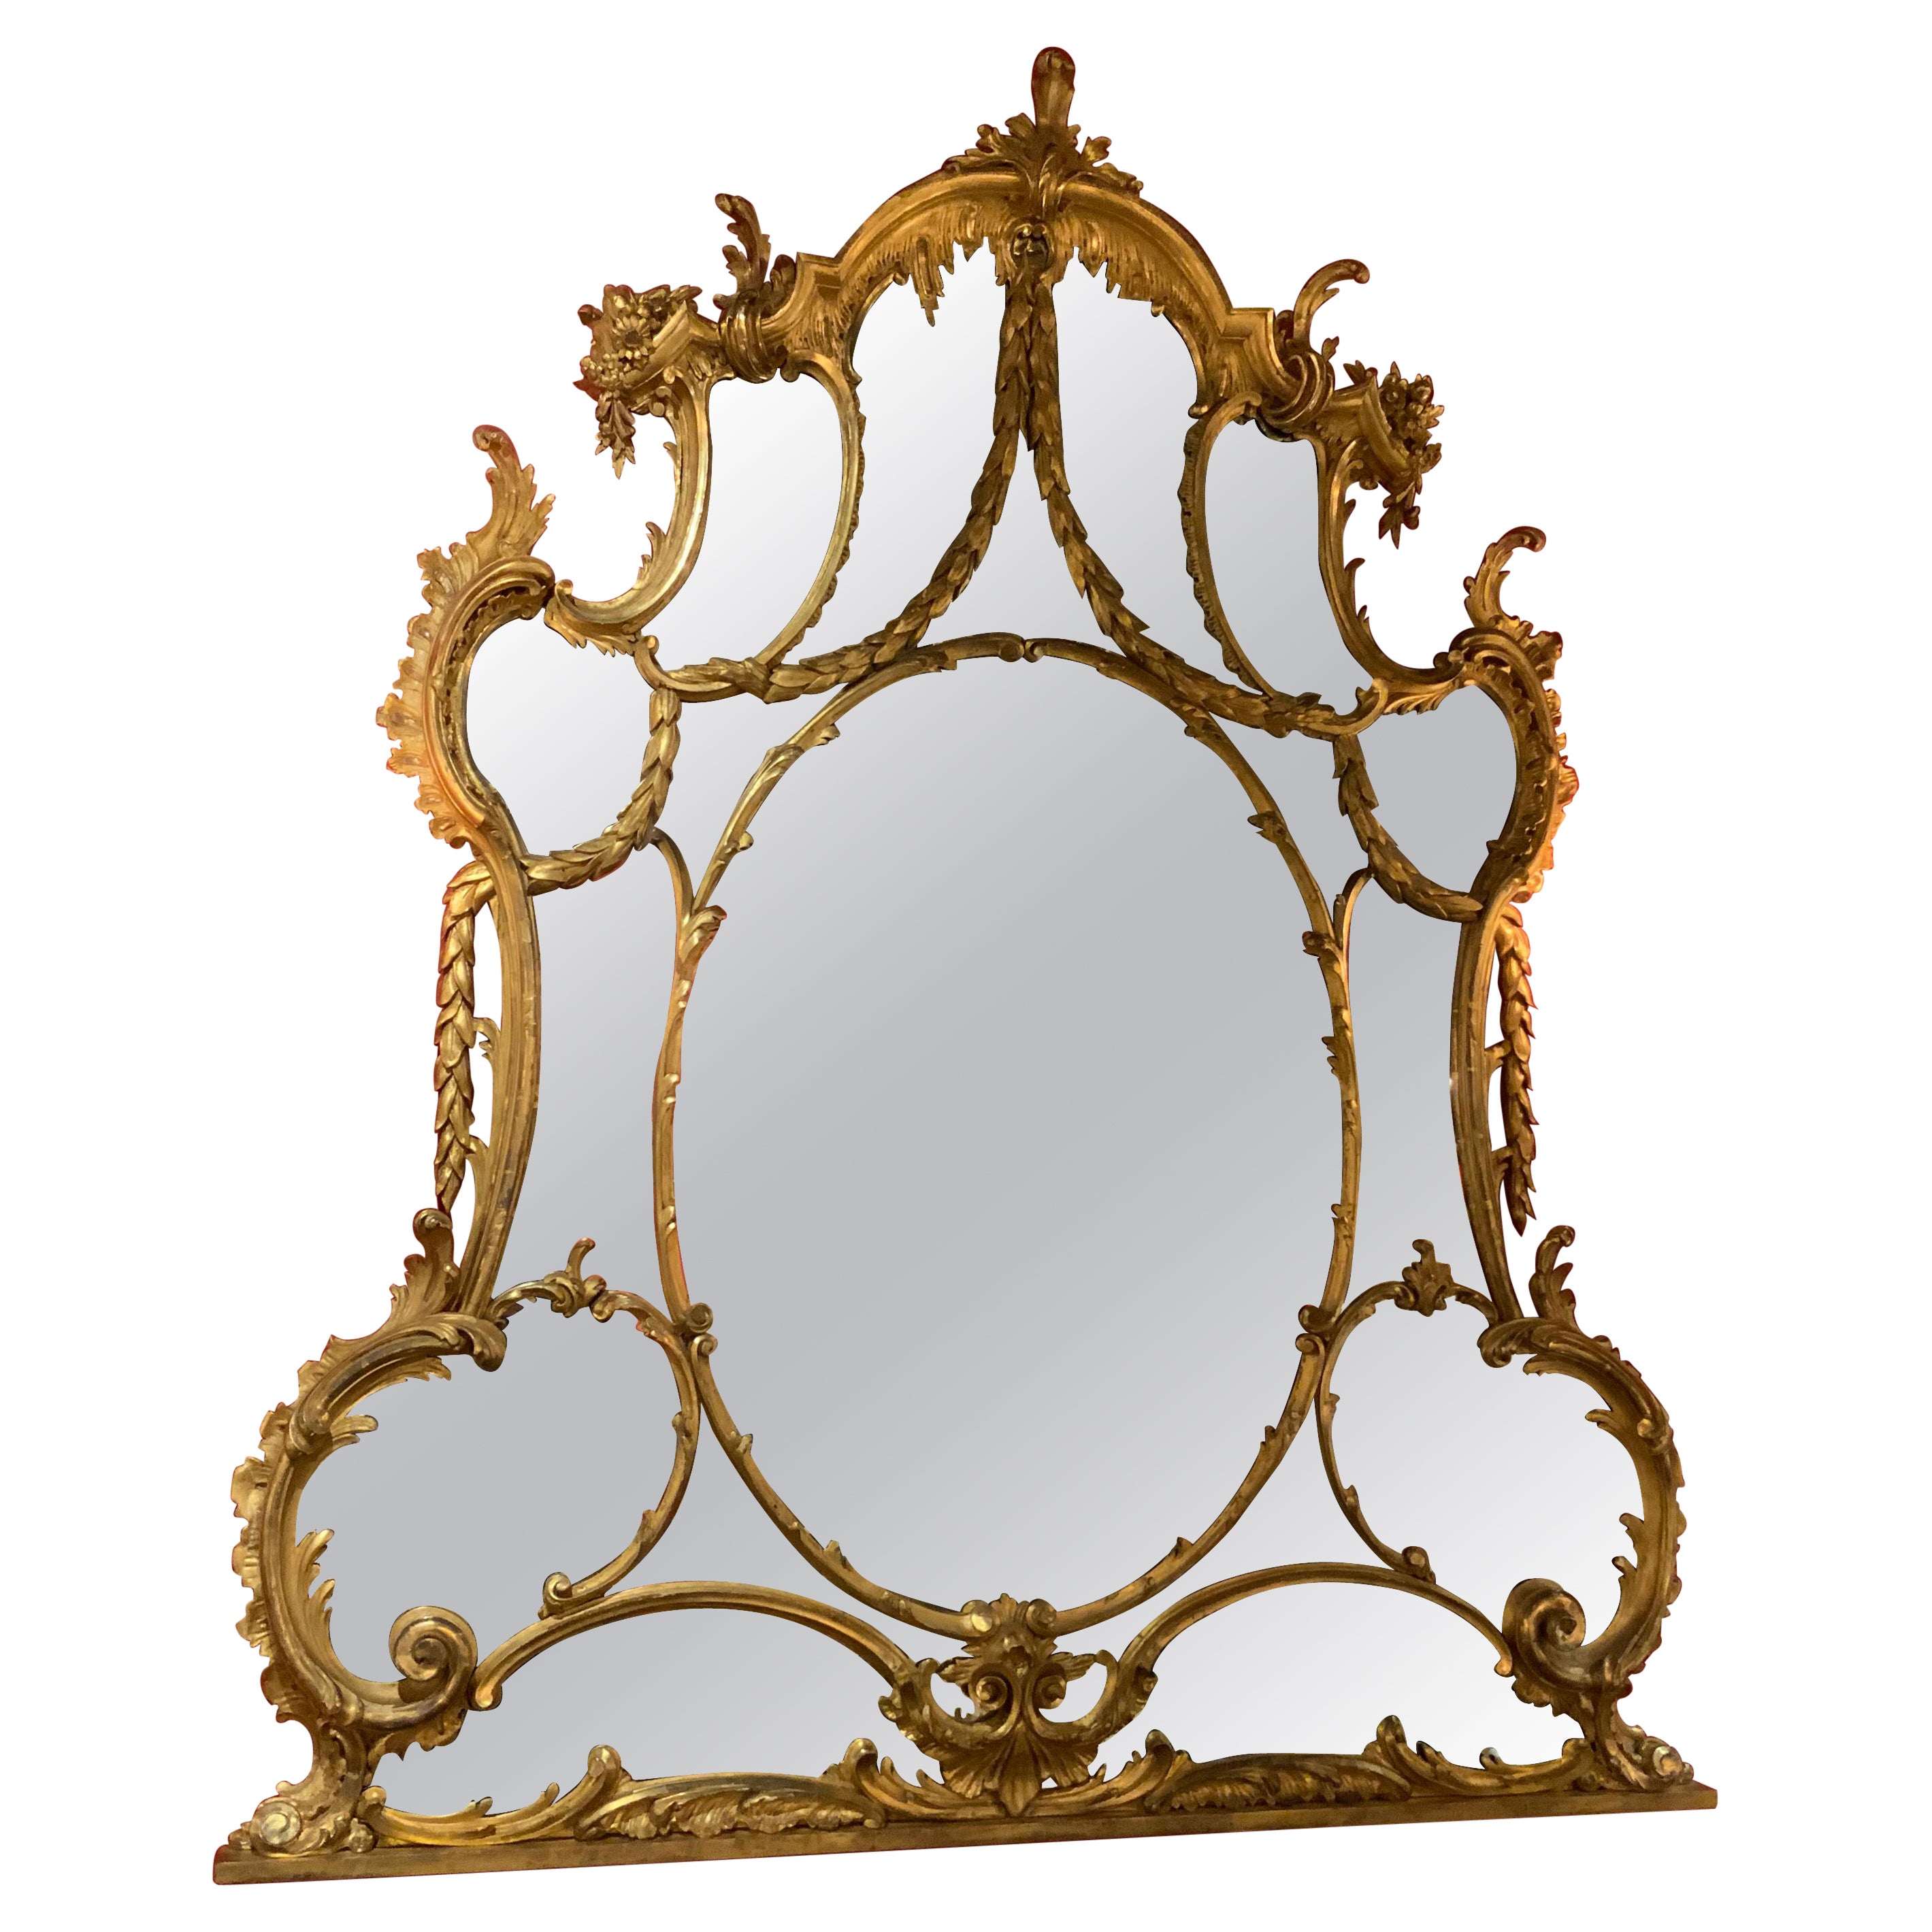 Grand miroir chippendale chinois en bois doré, style George III, 18ème siècle 